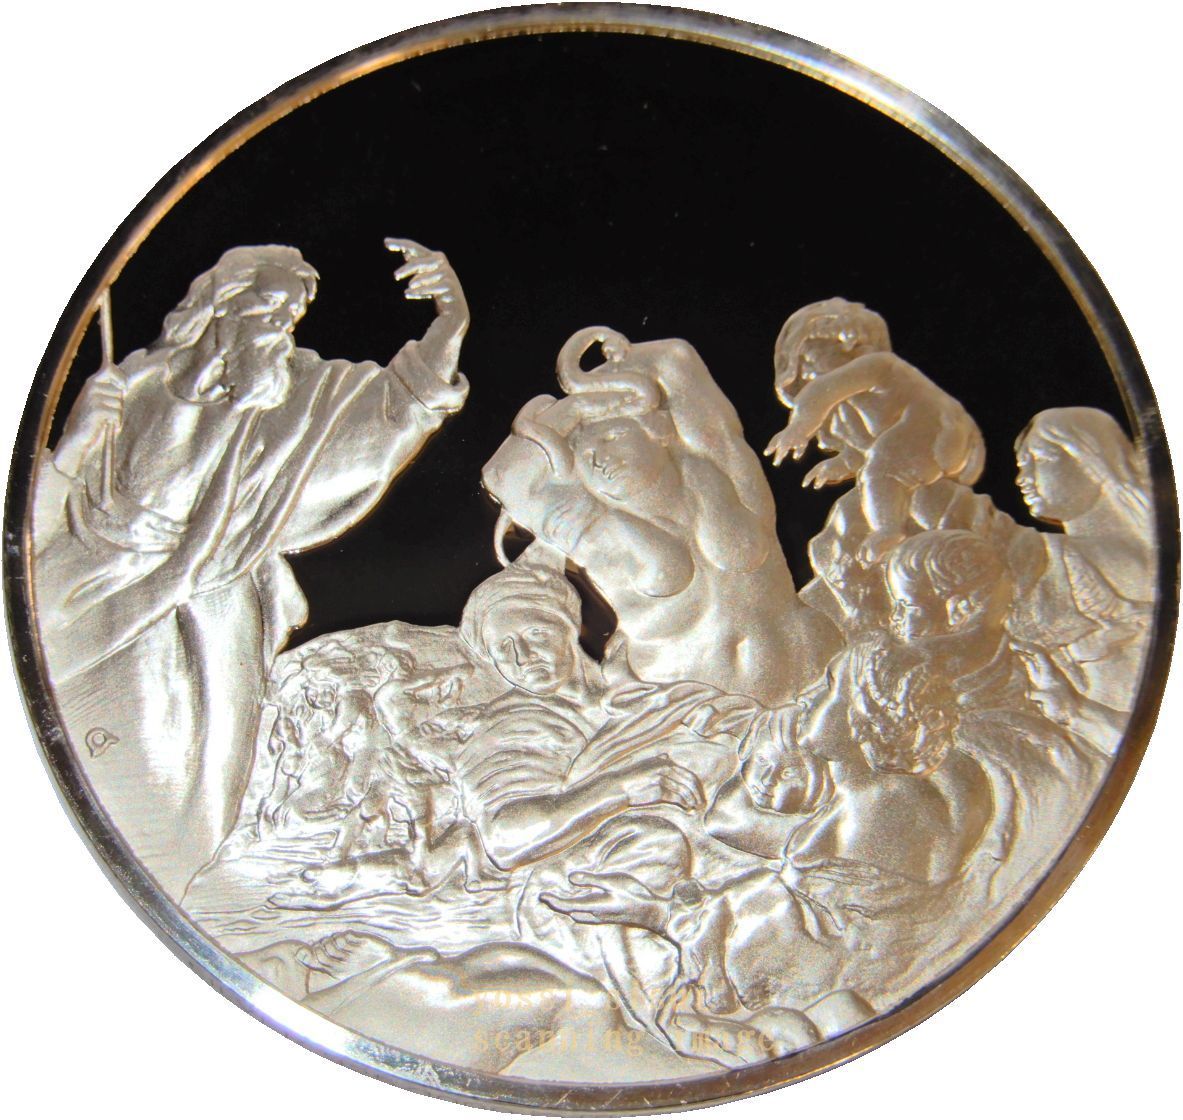 レア 限定品 世界の偉大な画家 ルーベンス 絵画 イエス キリスト教 旧約聖書 青銅の蛇 純銀製 メダル Silver925 記章 コイン コレクション